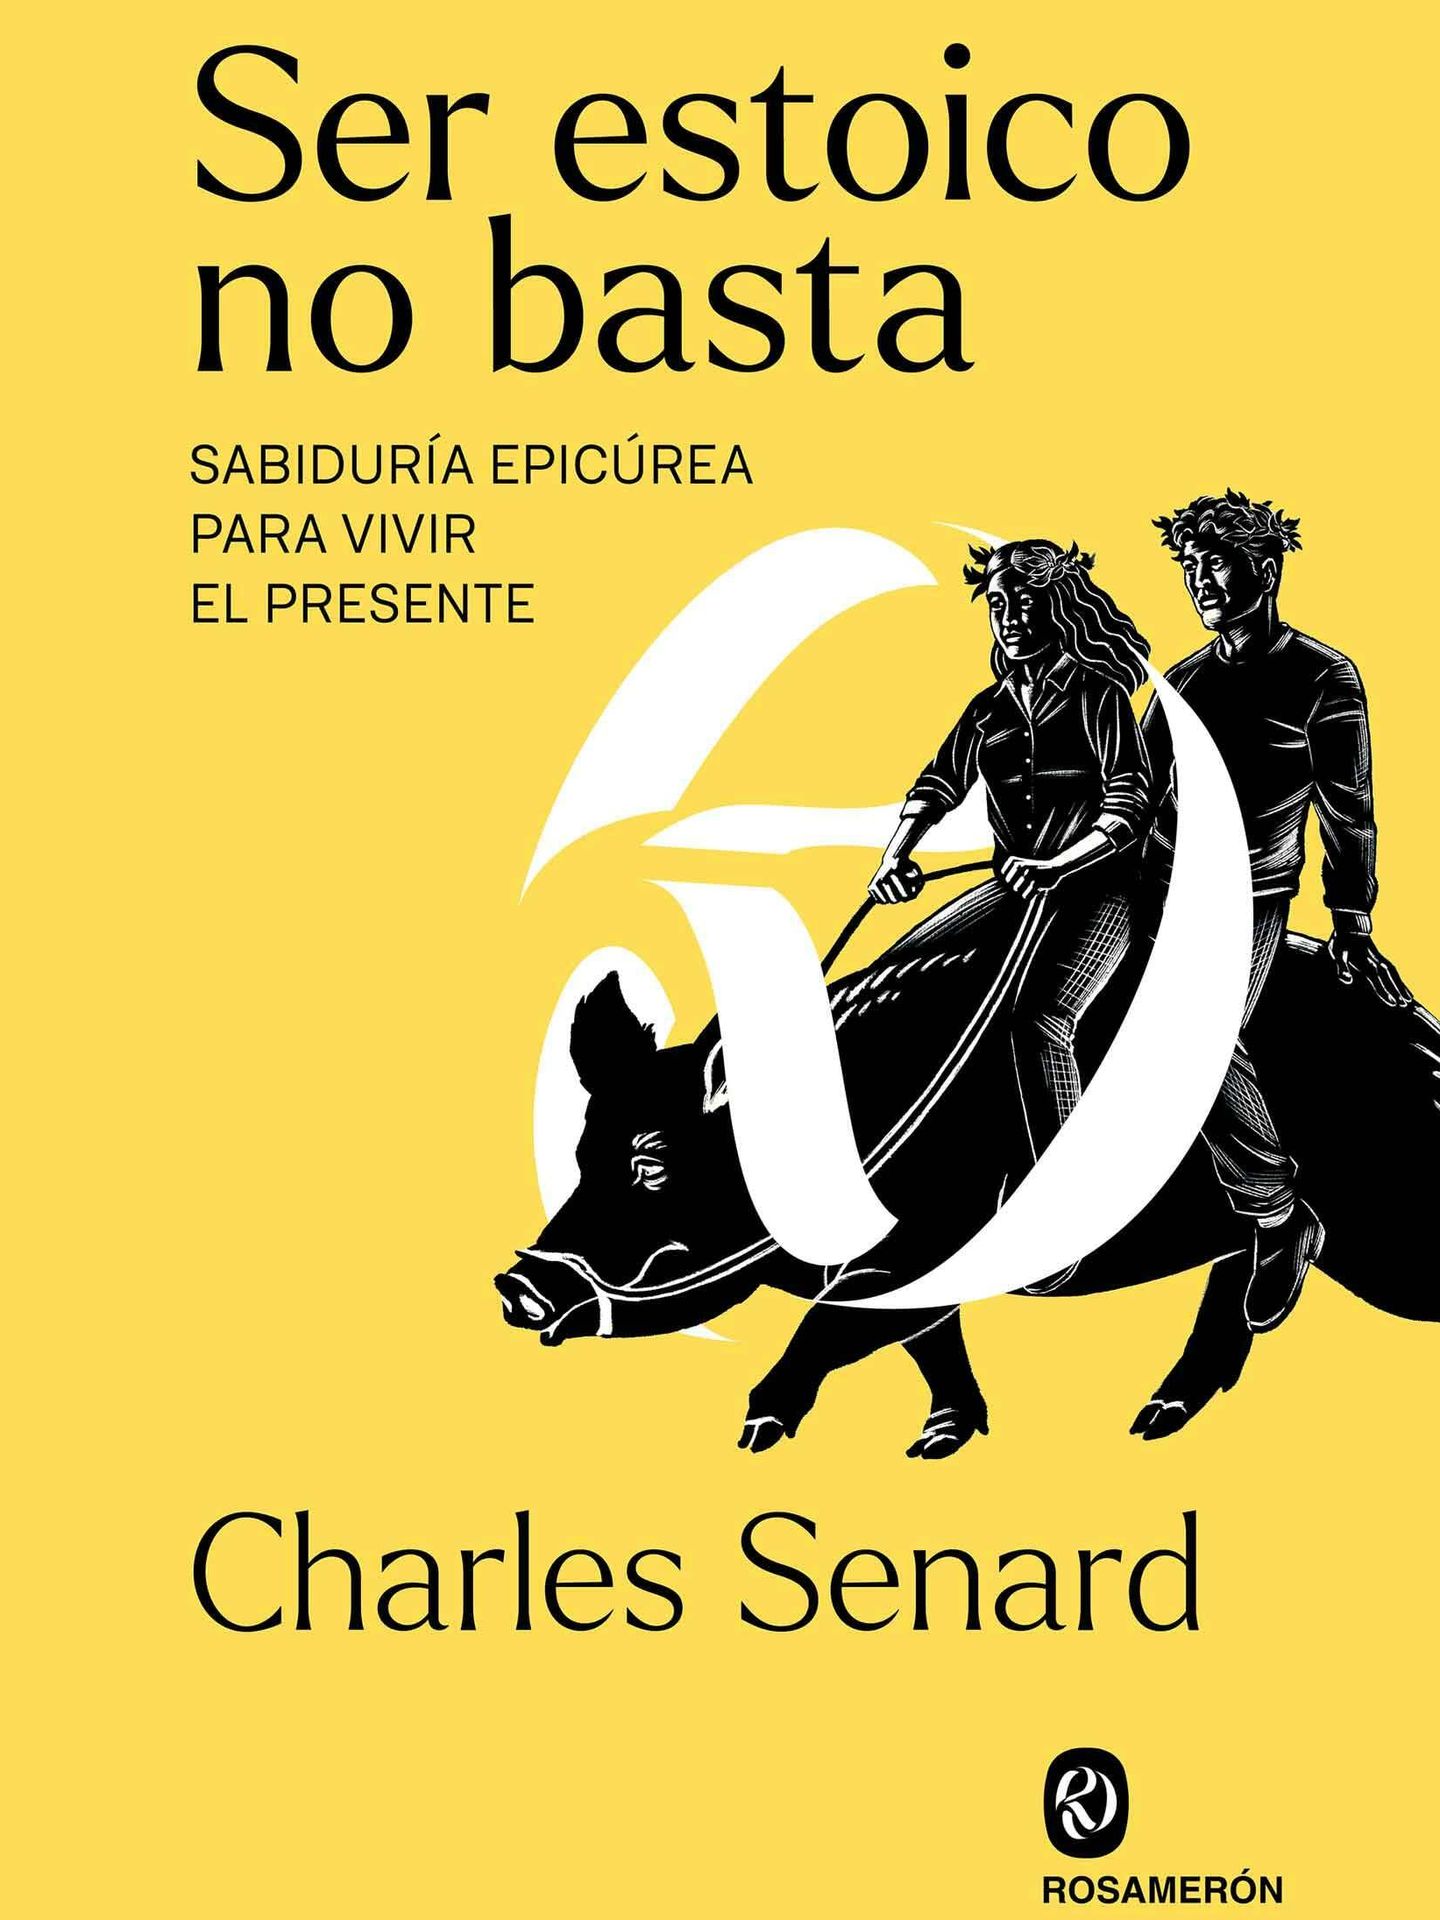 Portada del libro 'Ser estoico no basta', del latinista Charles Senard.